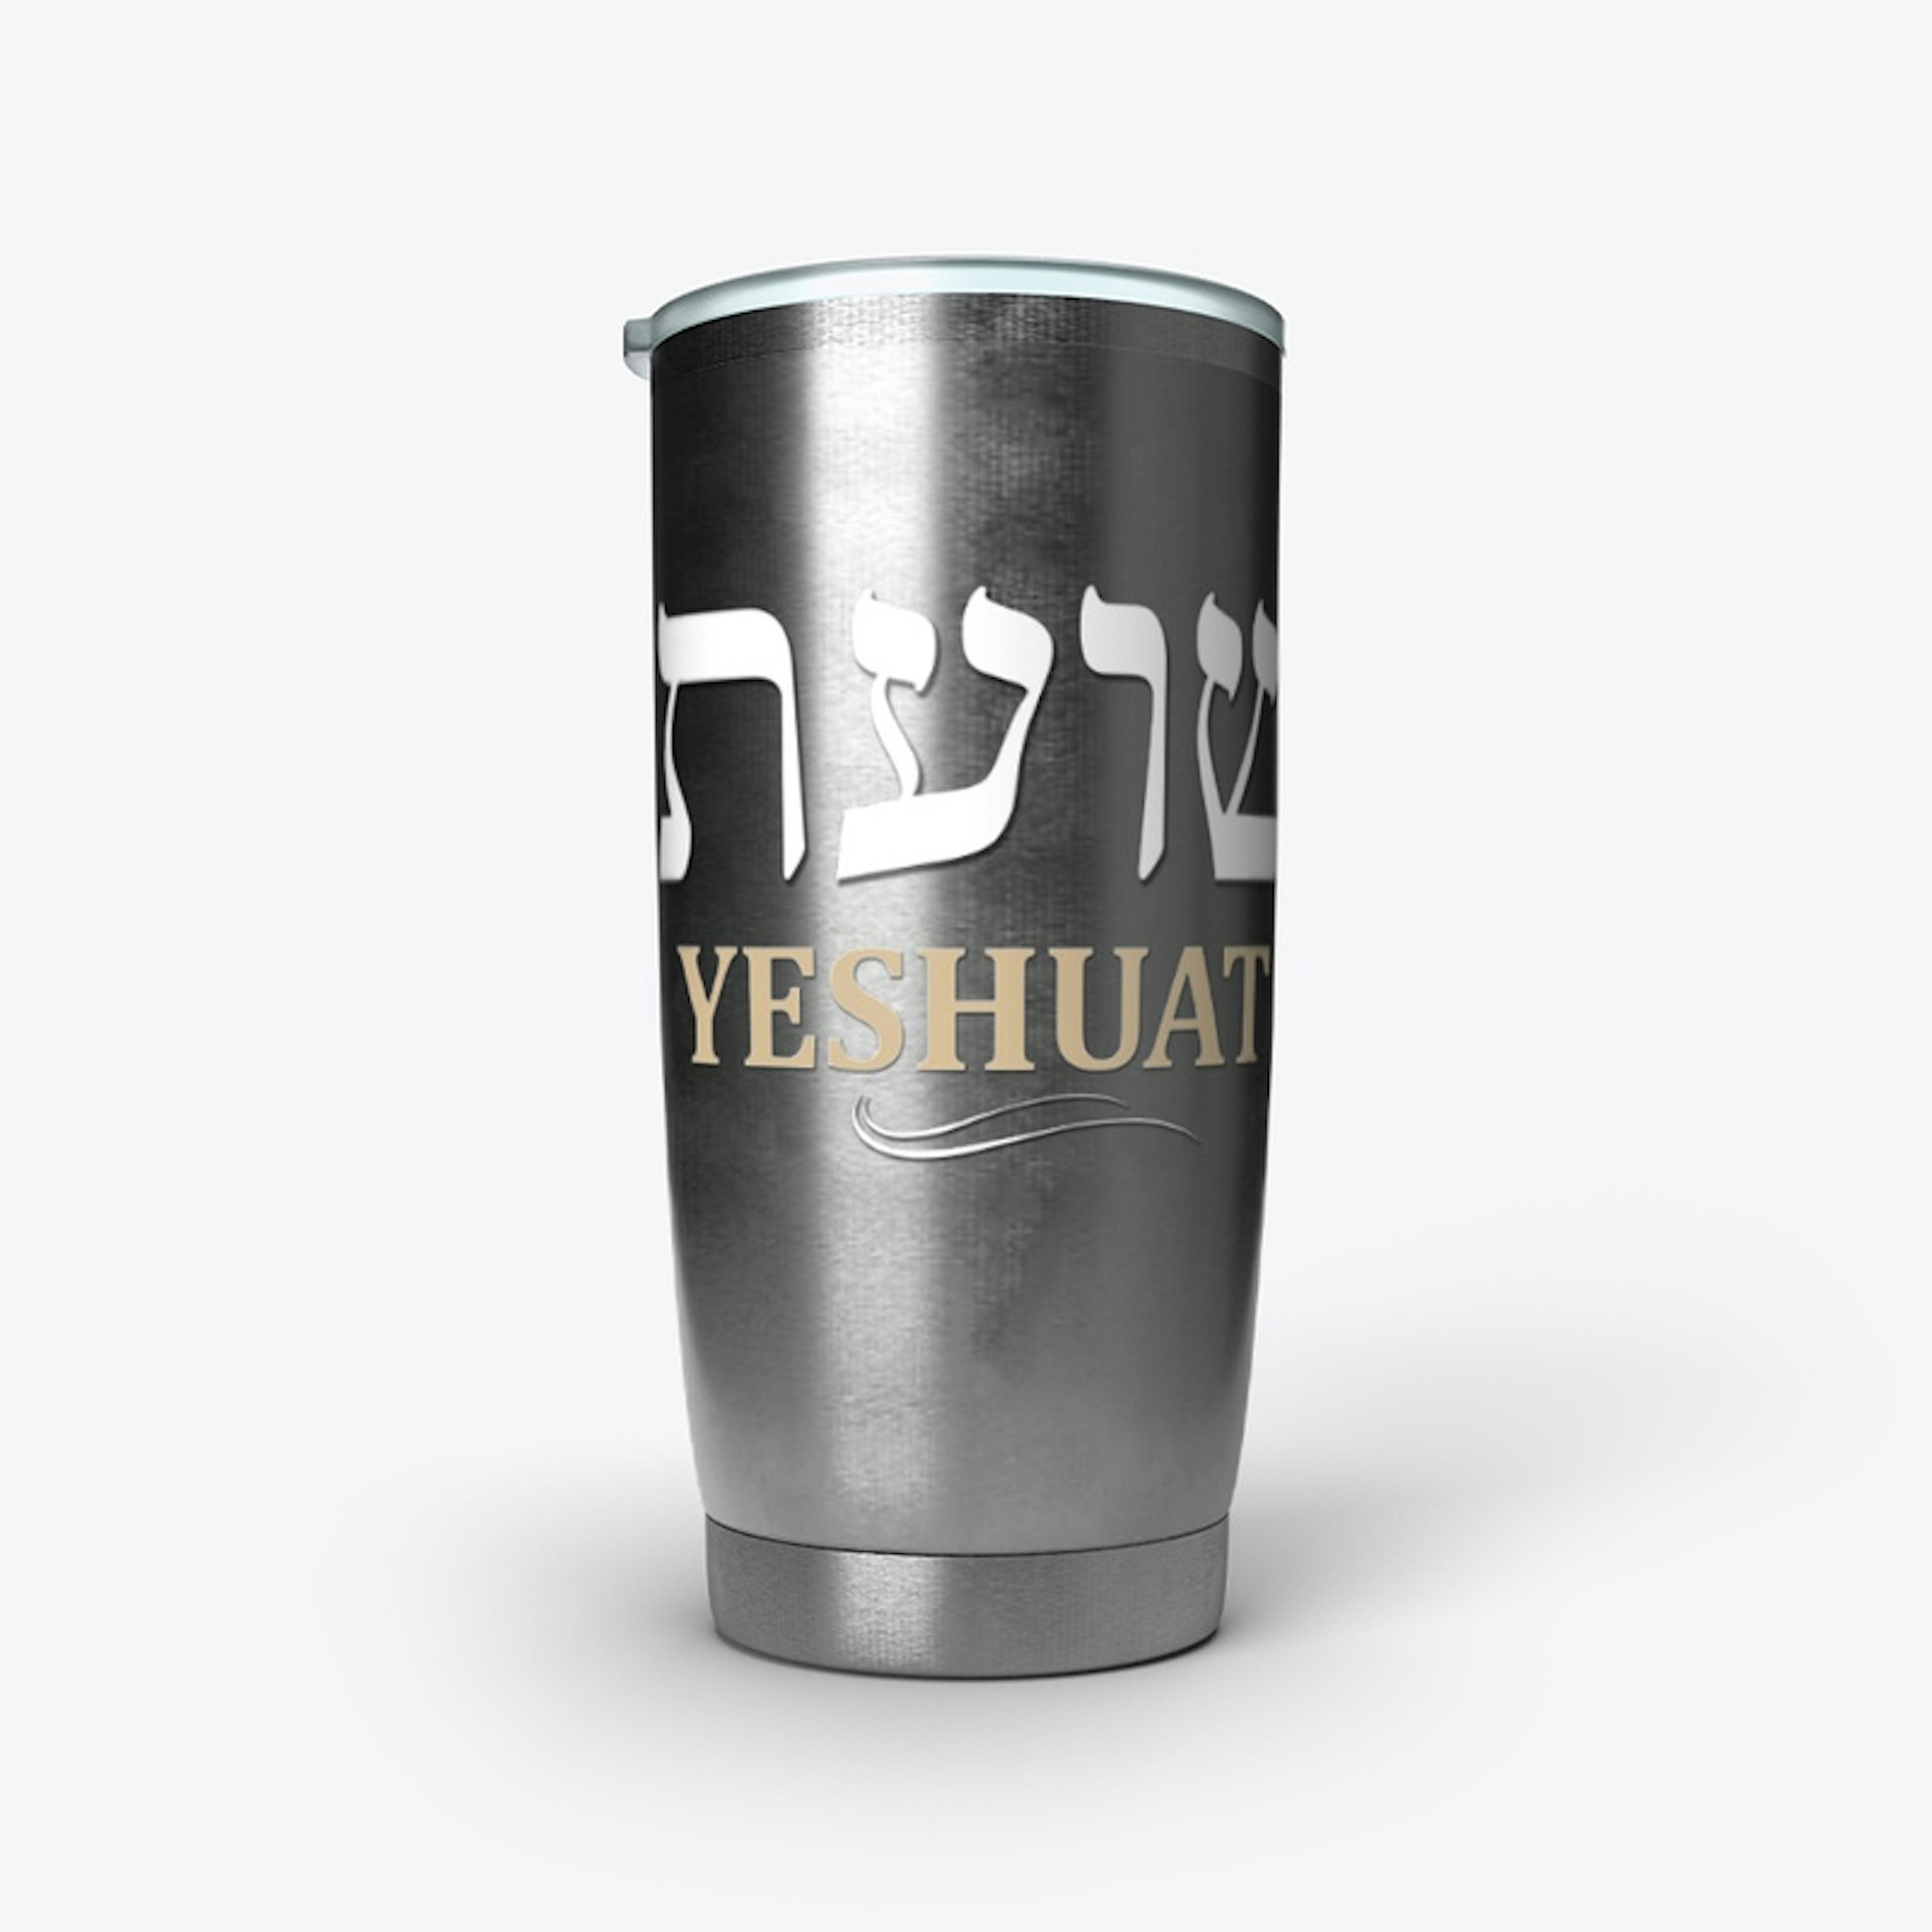 "YESHUATI" (MY SALVATION) HEBREW TUMBLER